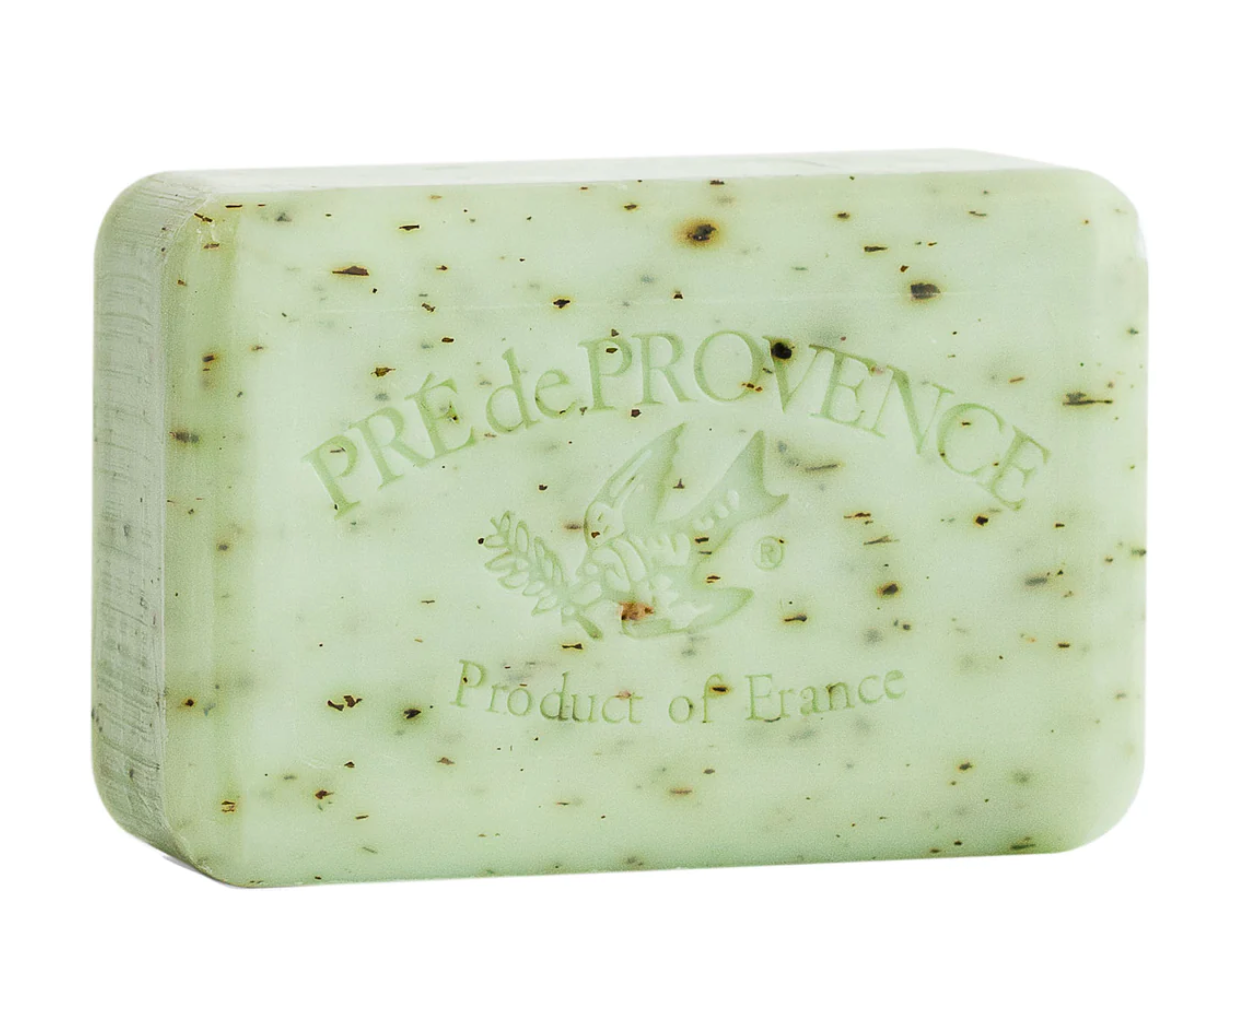 Rosemary Mint soap bar by Pré de Provence